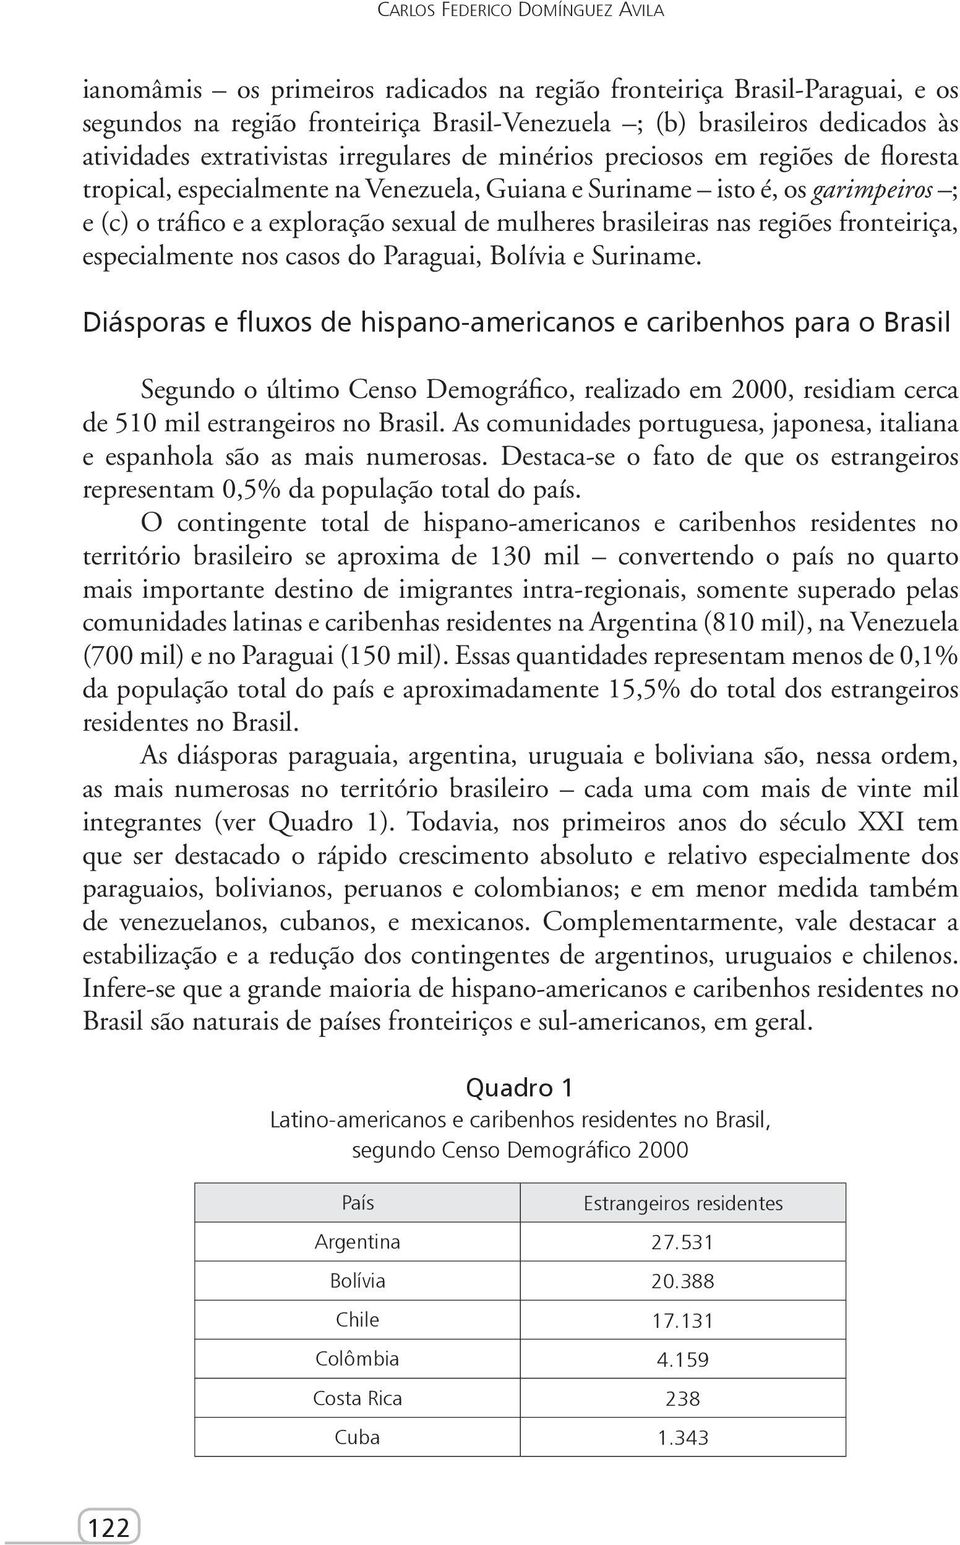 mulheres brasileiras nas regiões fronteiriça, especialmente nos casos do Paraguai, Bolívia e Suriname.